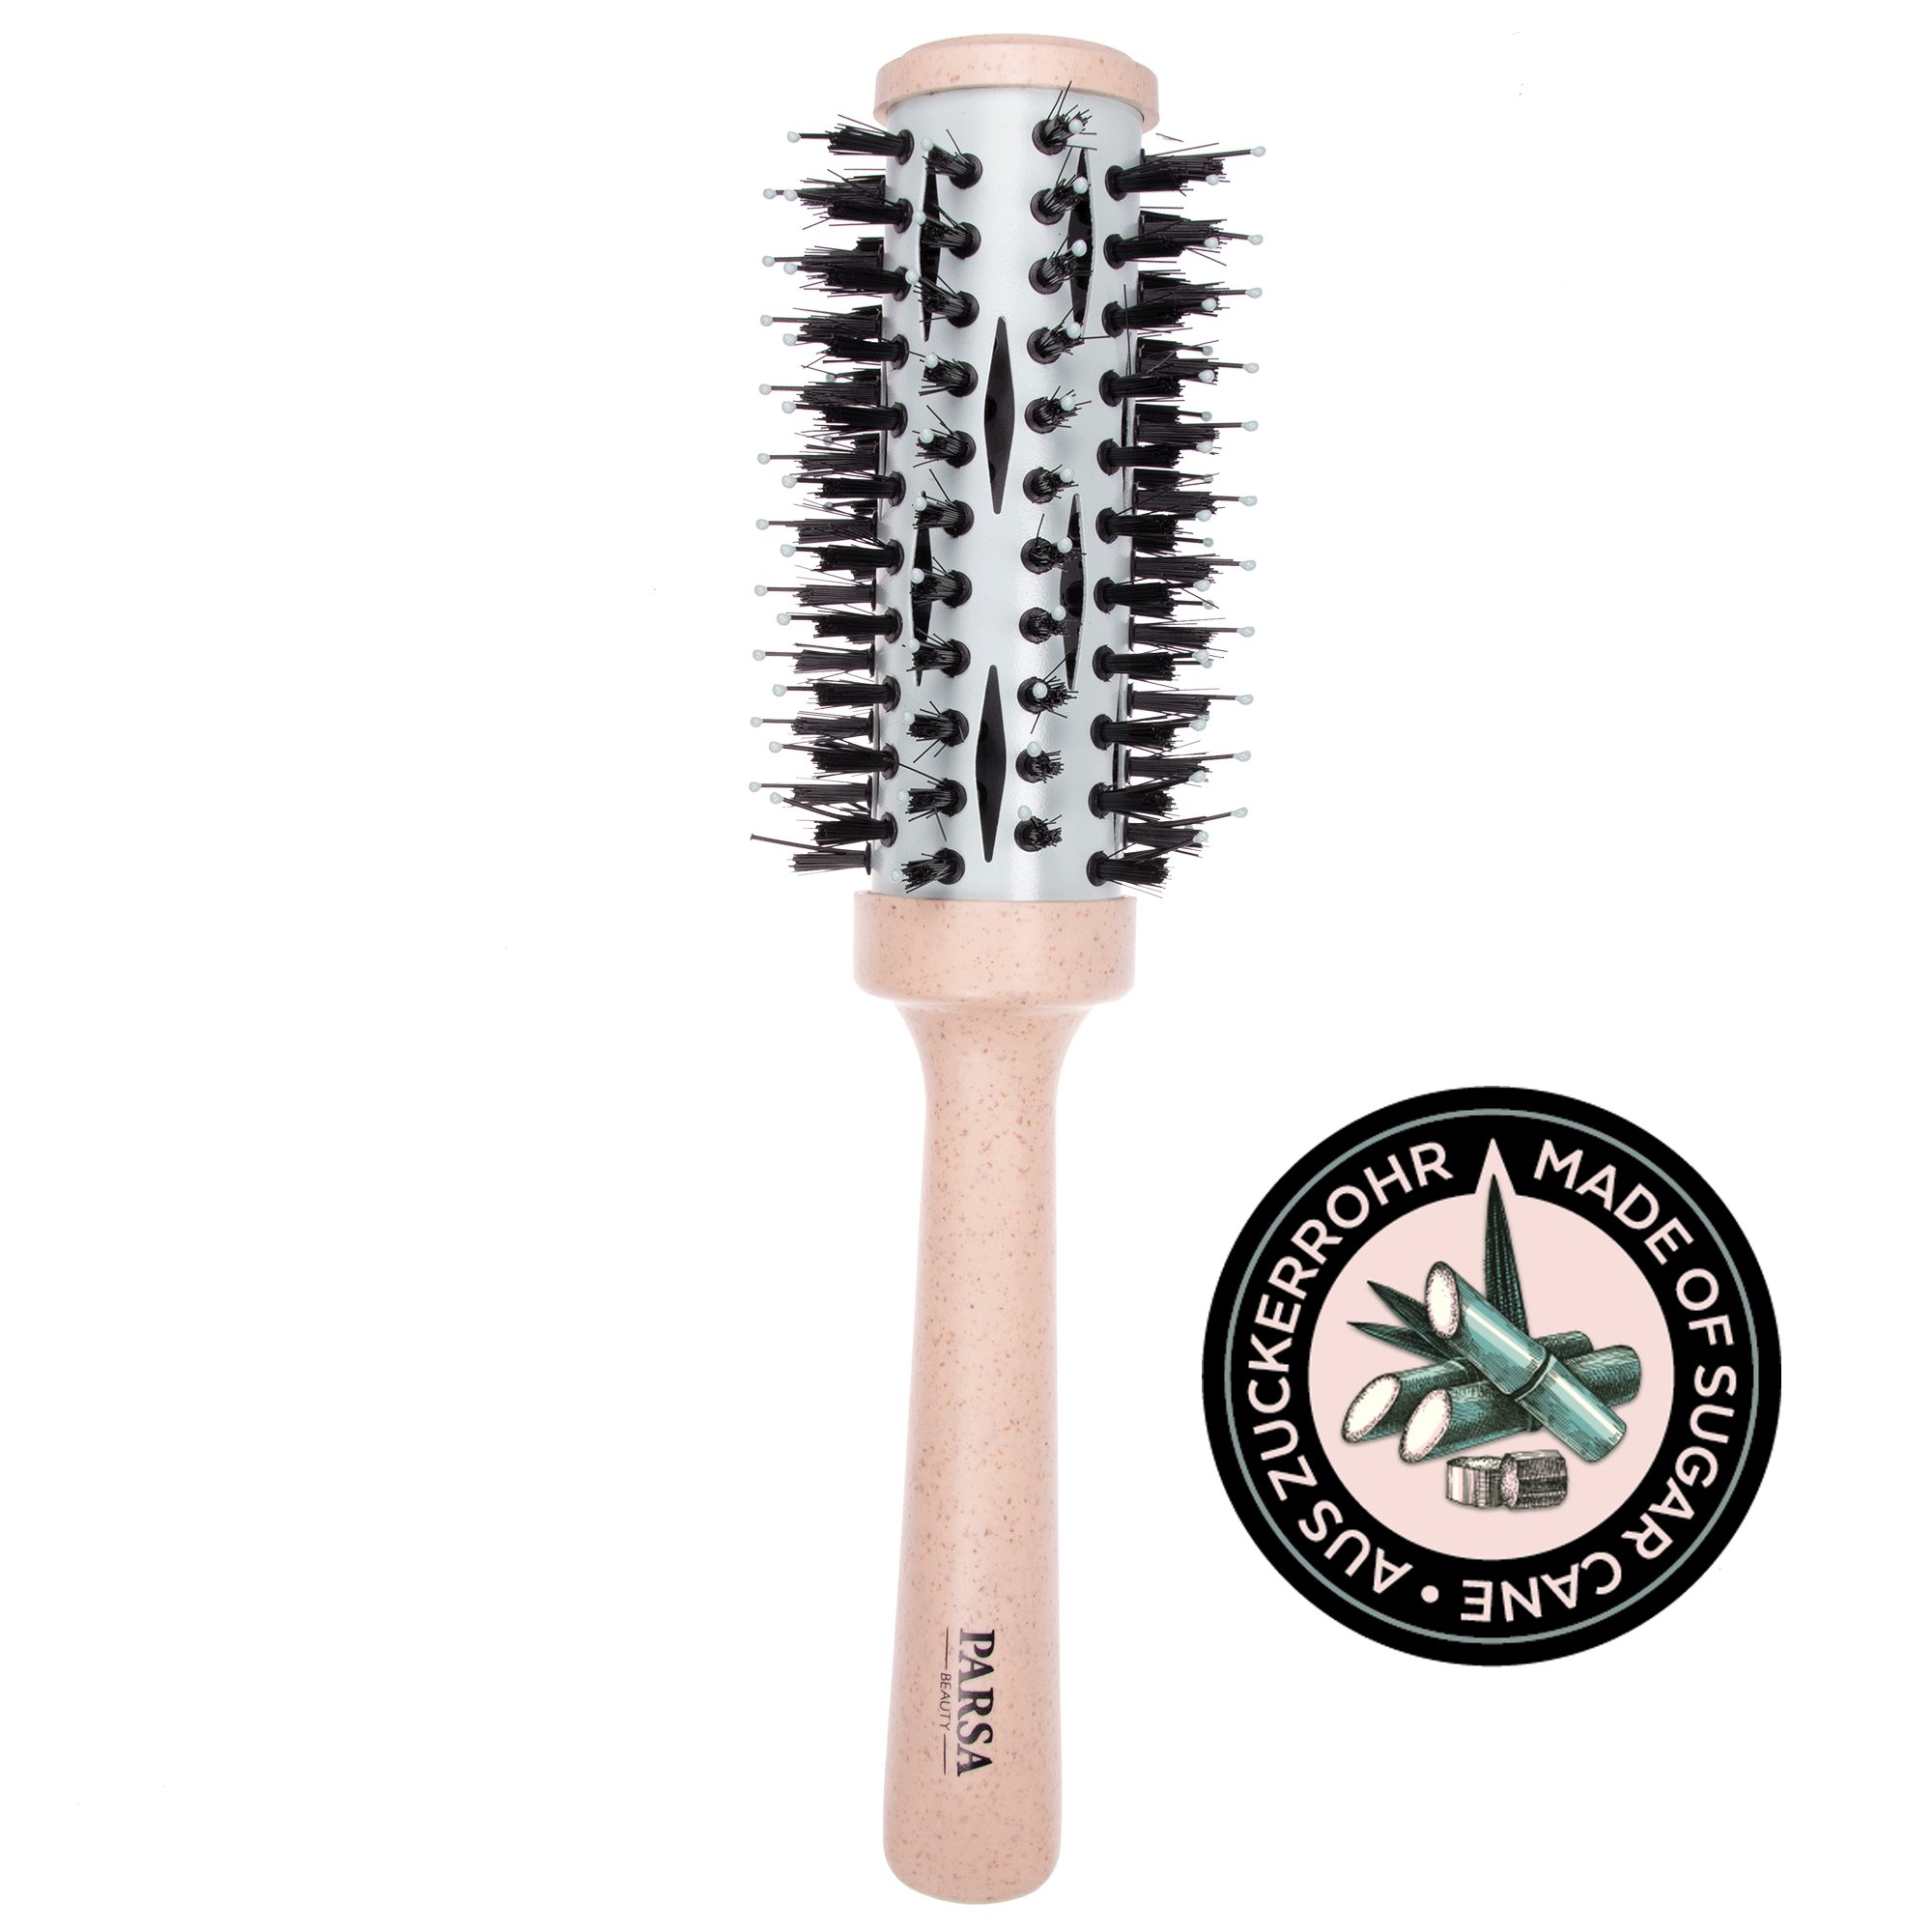 PARSA Beauty Haarbürste »Volumenbürste Organic vegane 33mm Rundbürste in  beige« online kaufen | OTTO